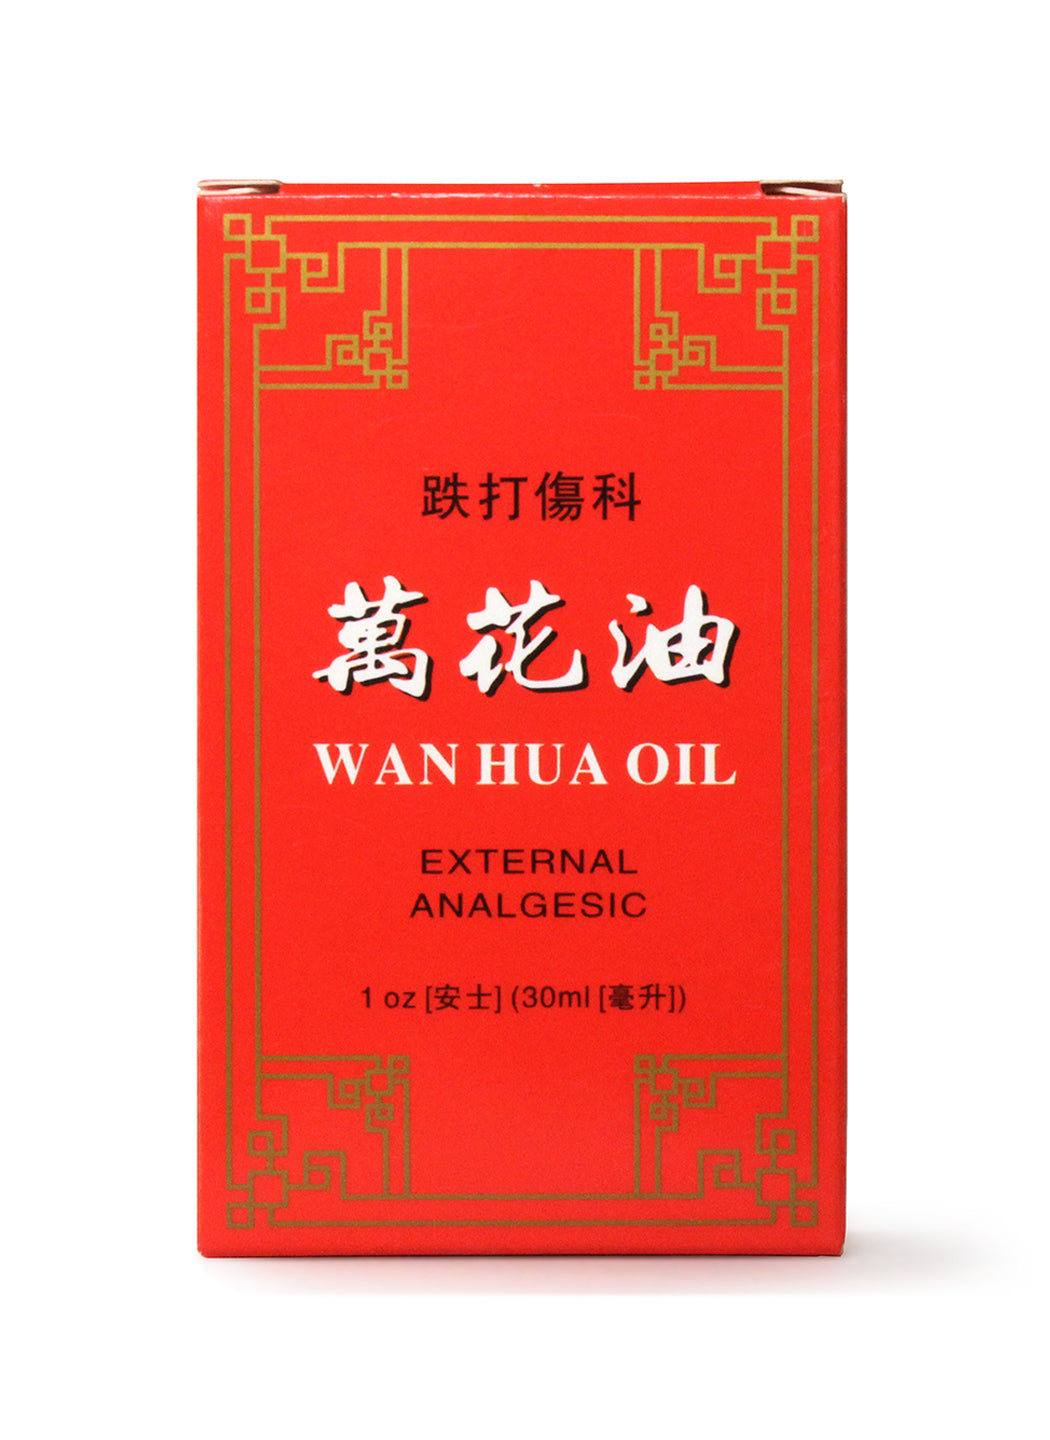 Wan Hua Oil - External Analgesic External Use Only